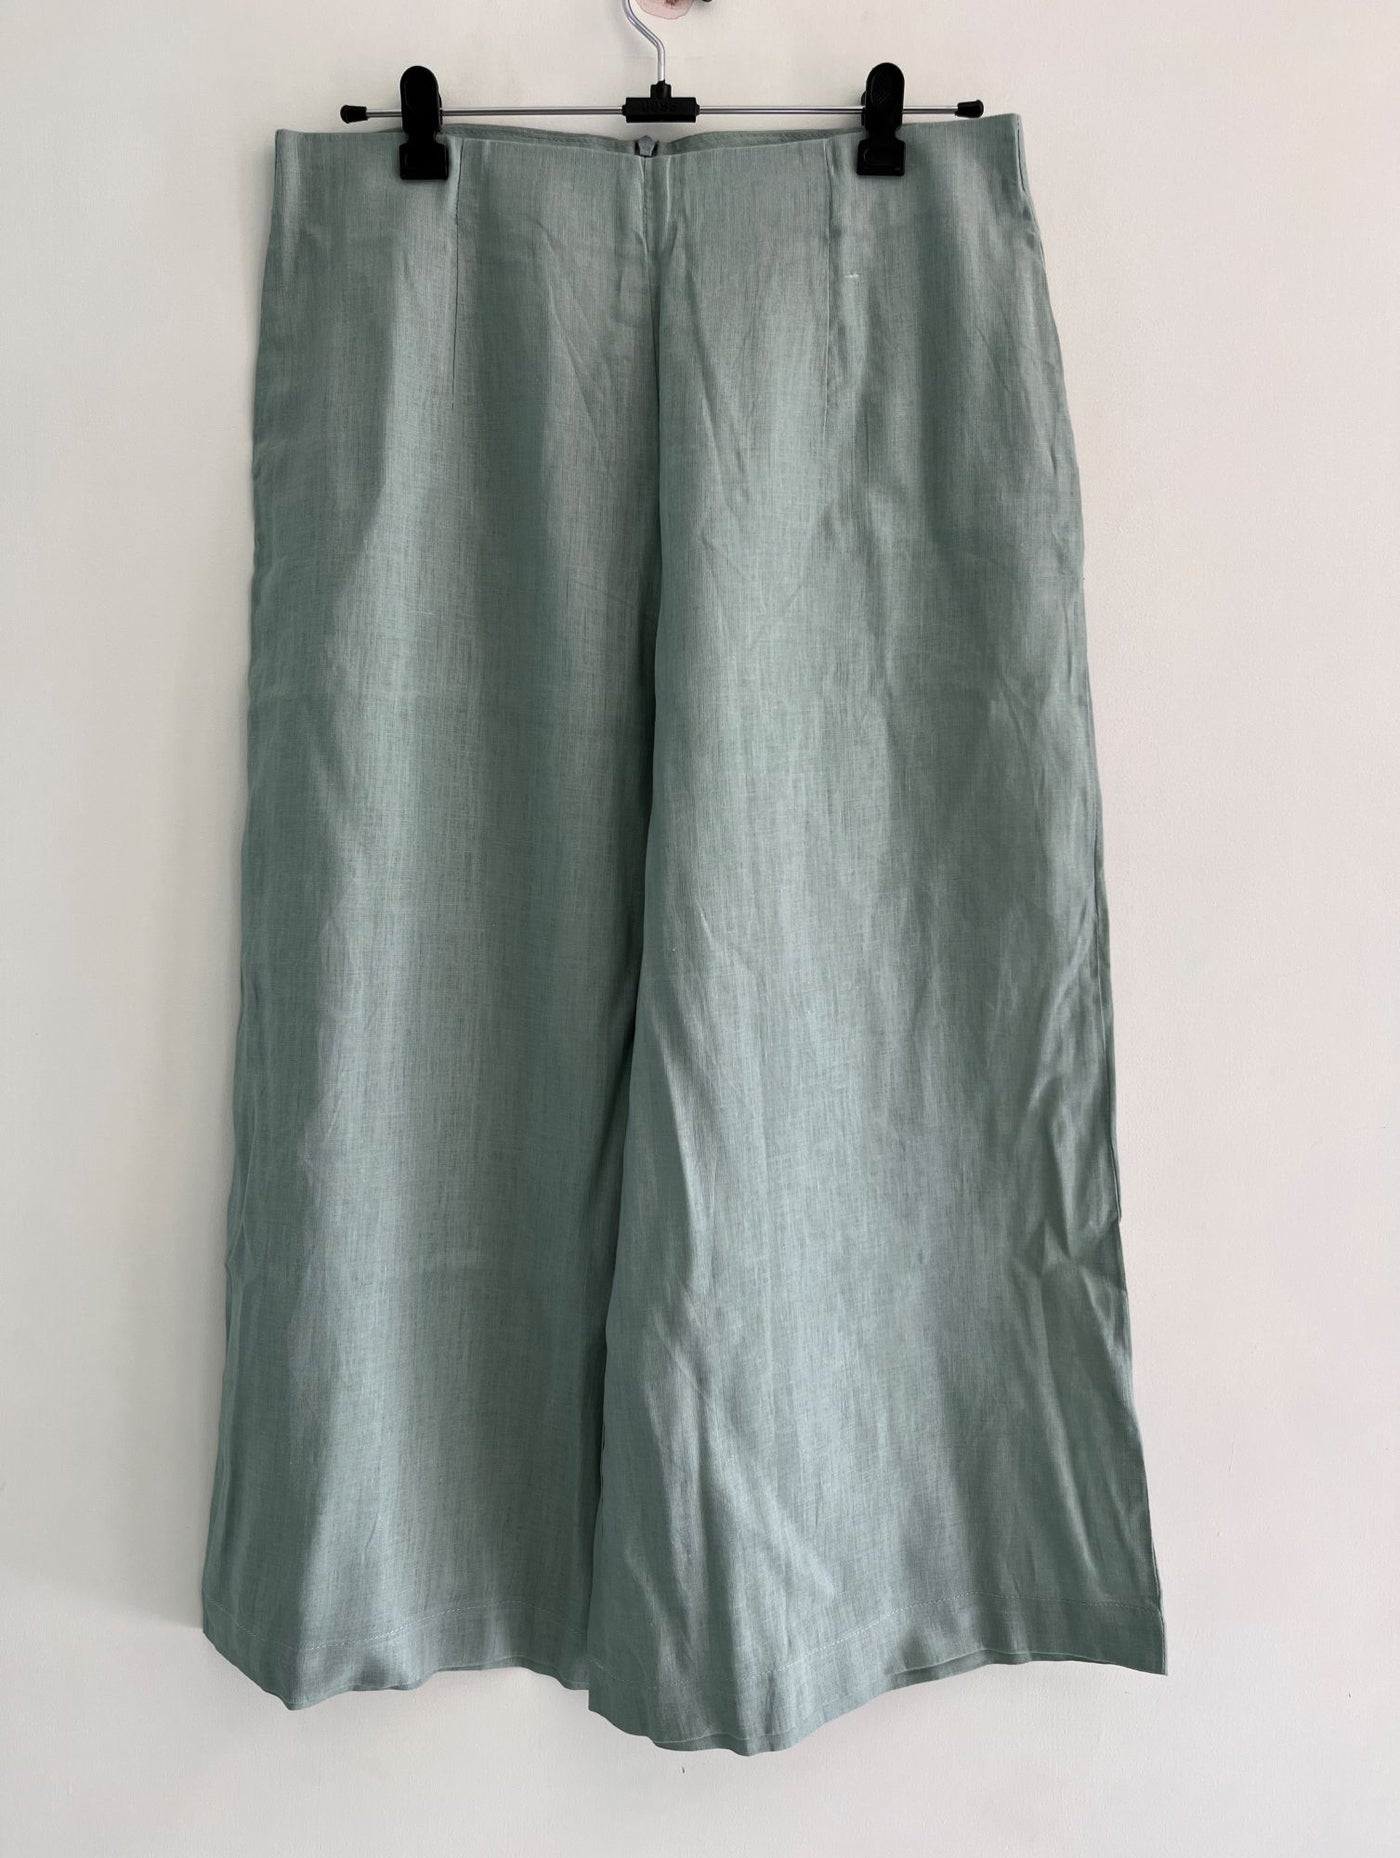 Teal Linen Summer Pants (Waist - 30 Inches)